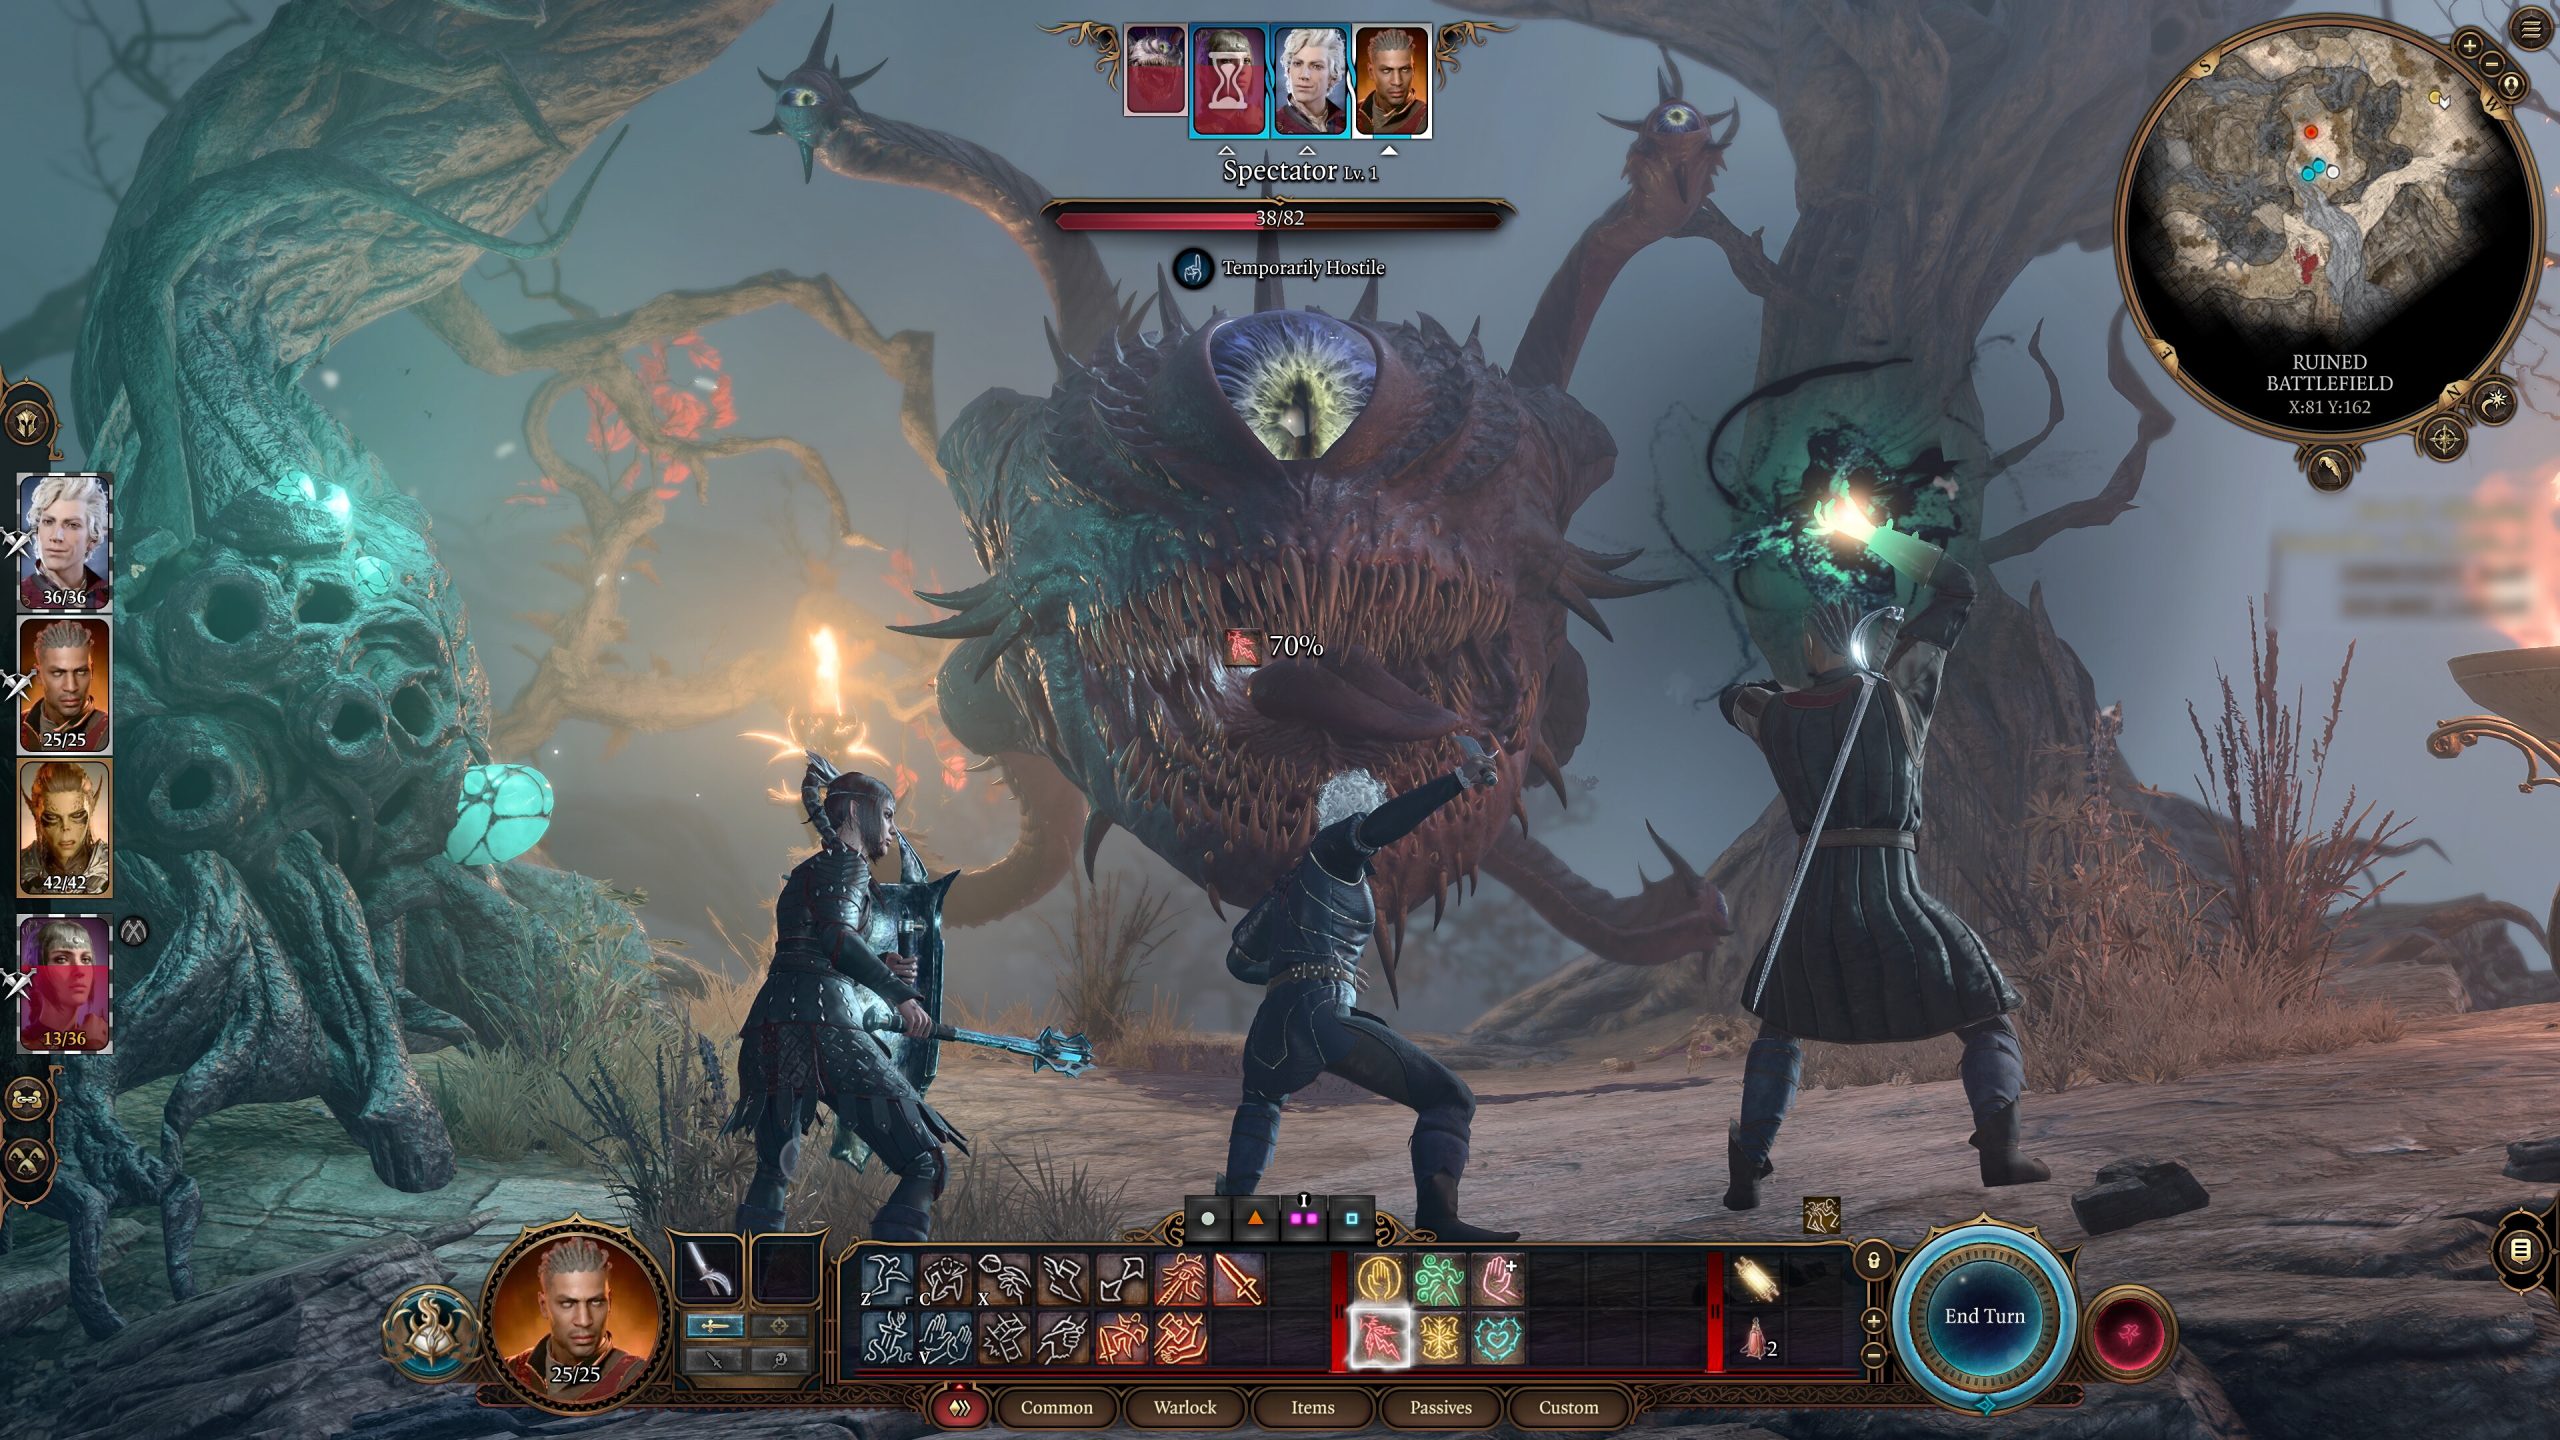 A screenshot from Baldur's Gate 3